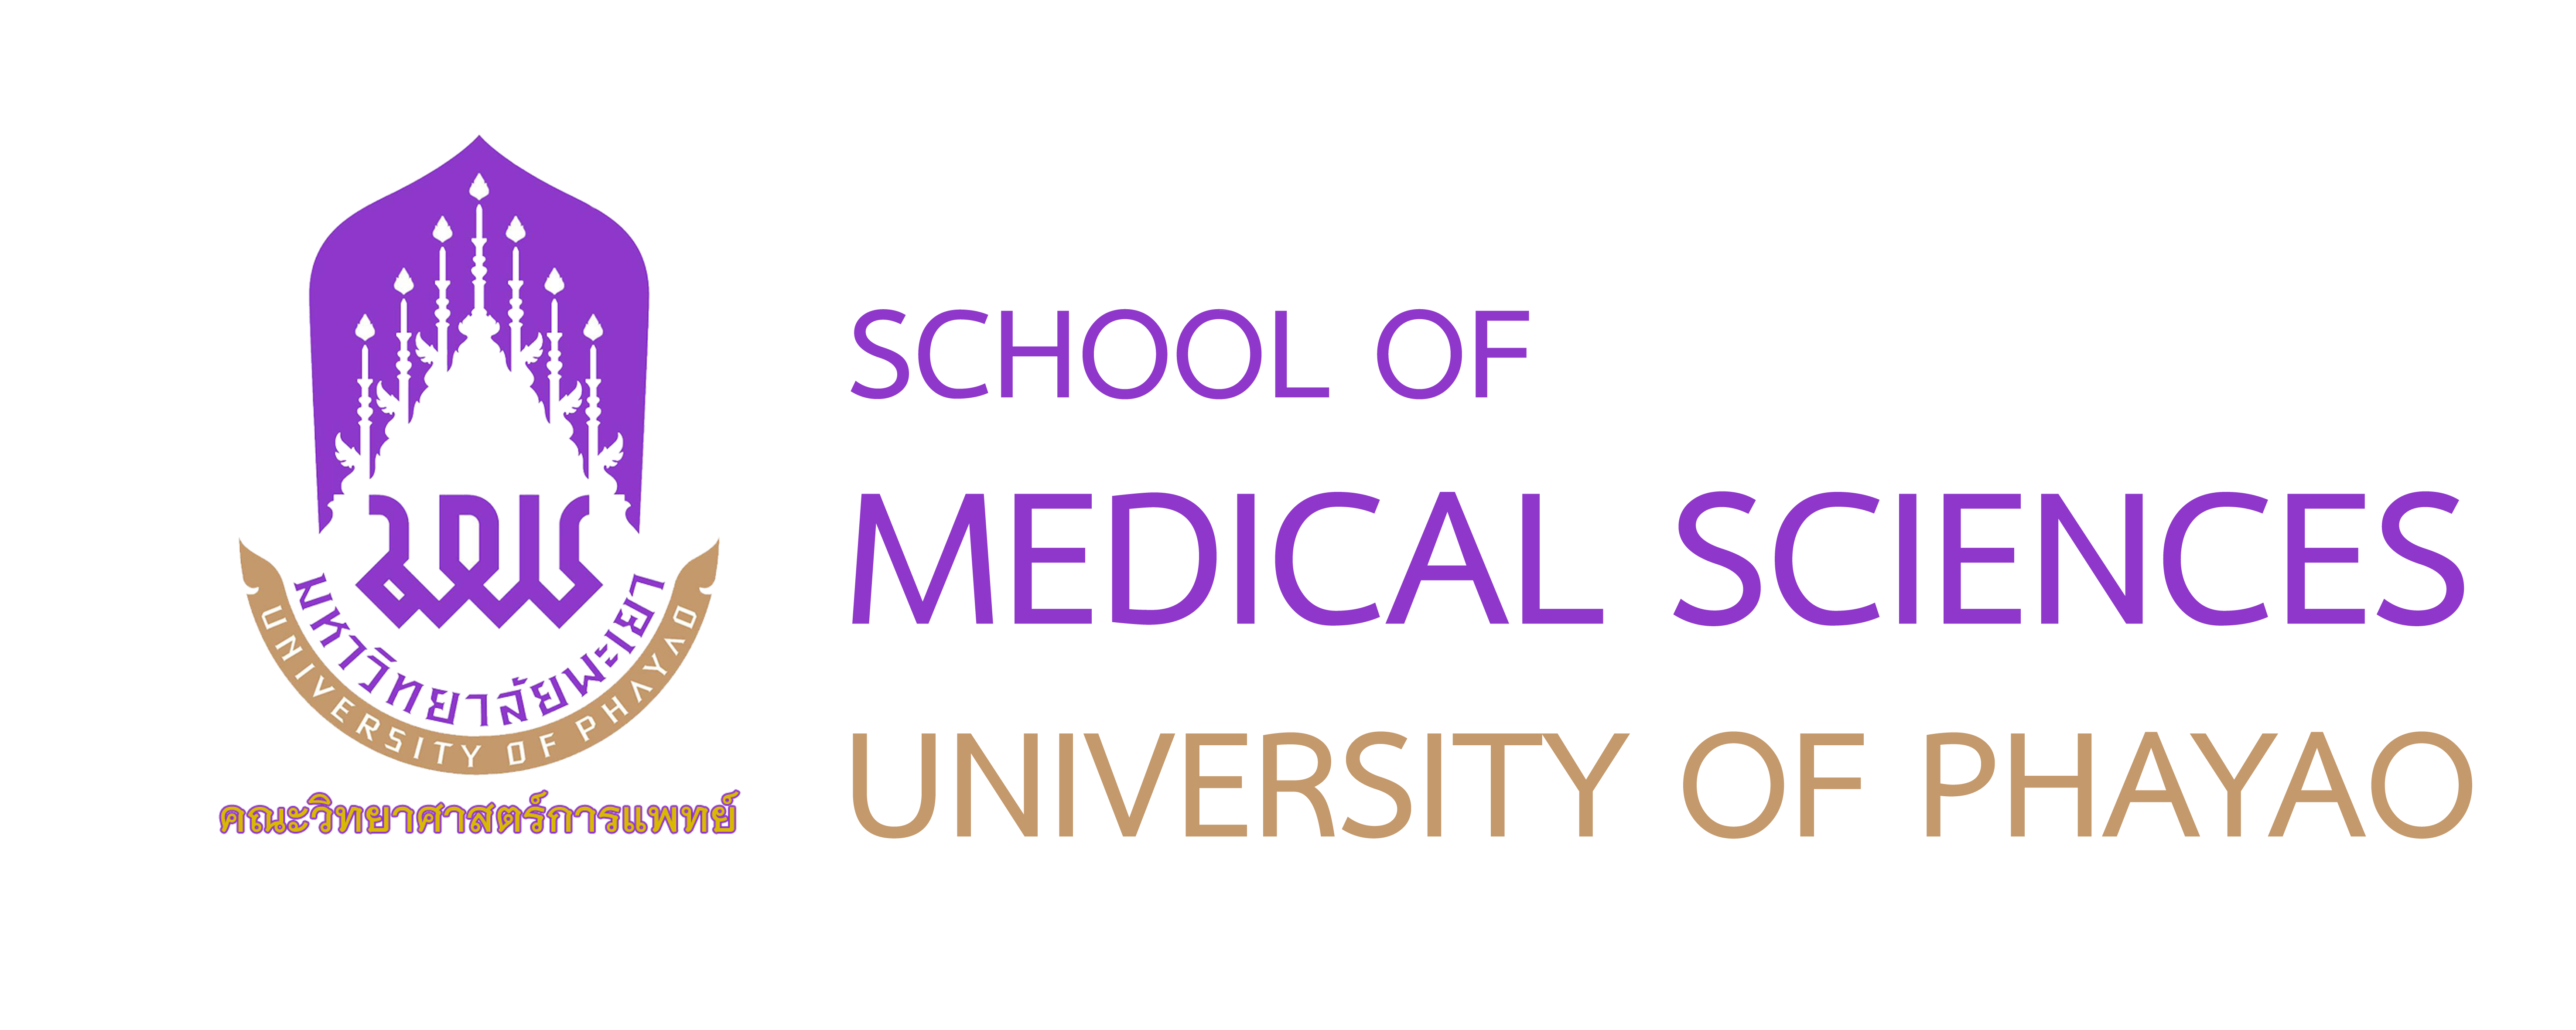 School of Medical Sciences